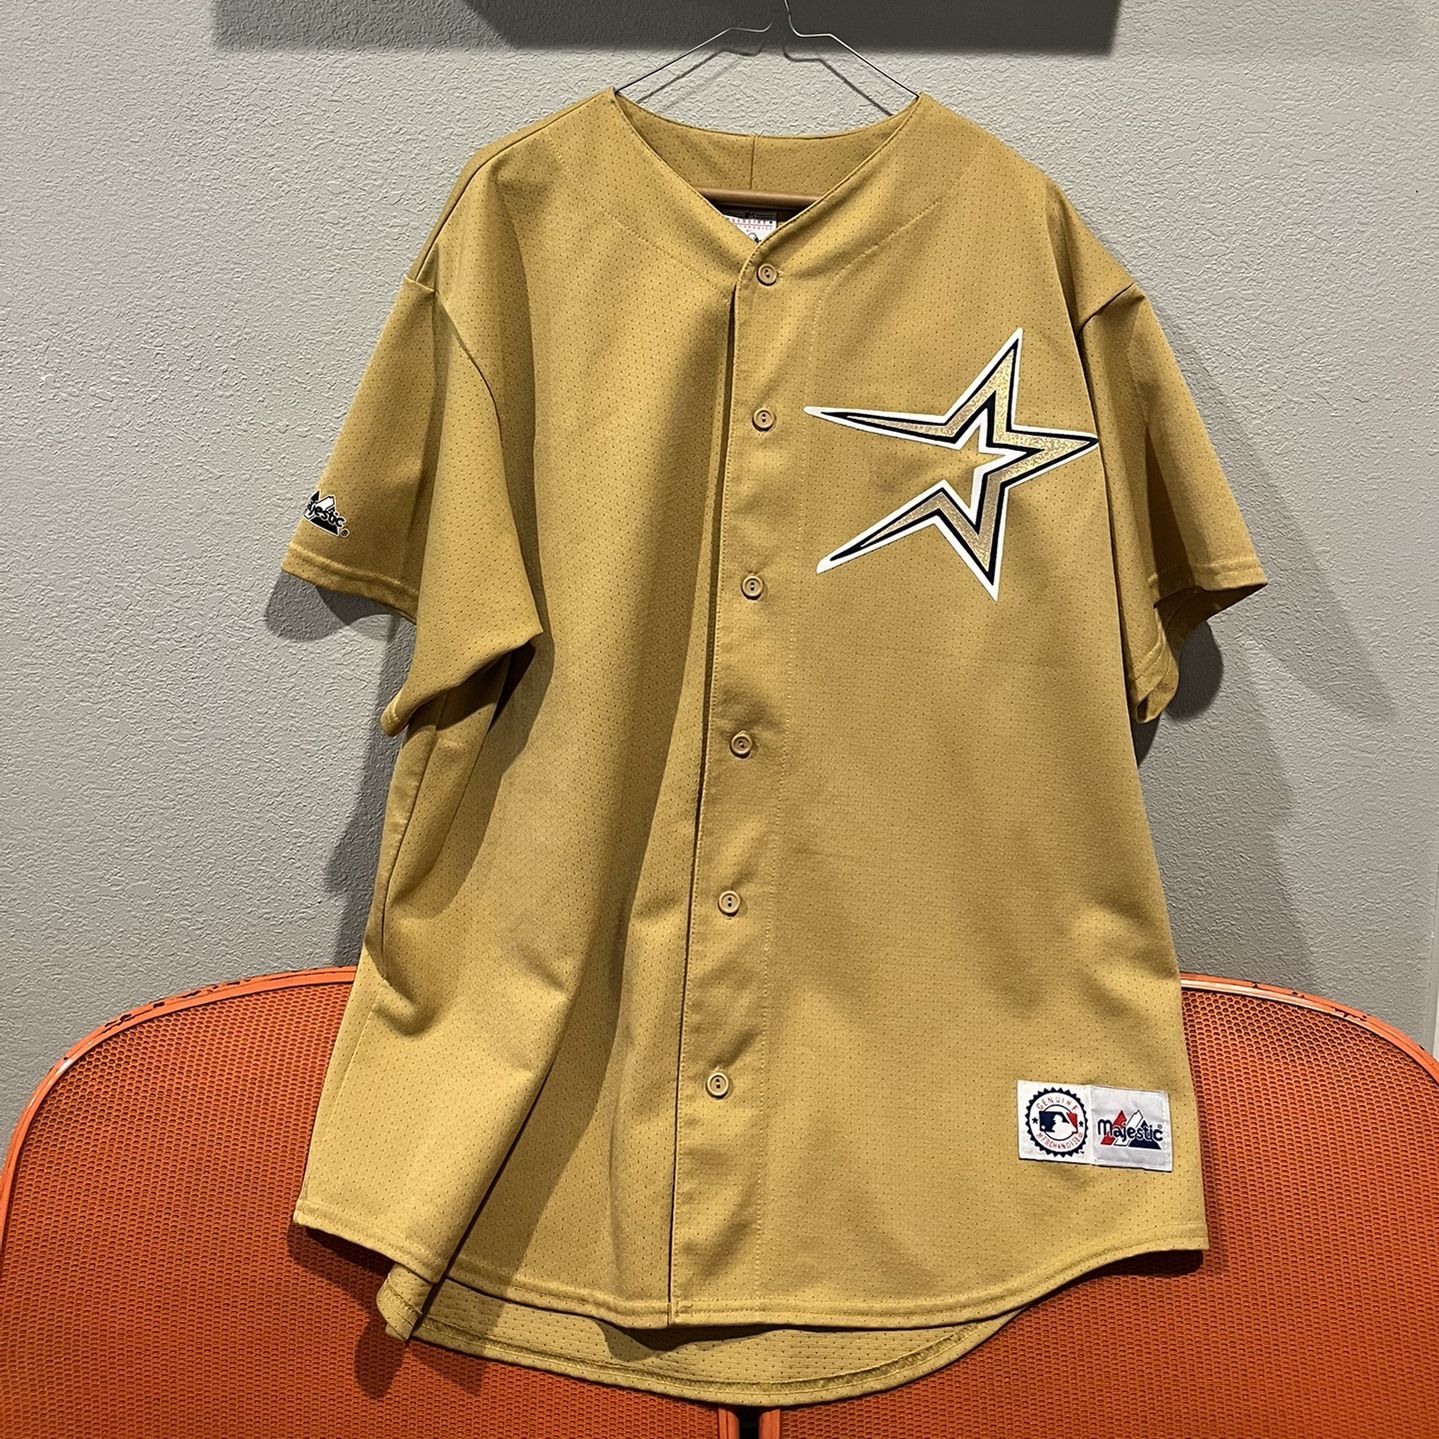 astros vintage jerseys